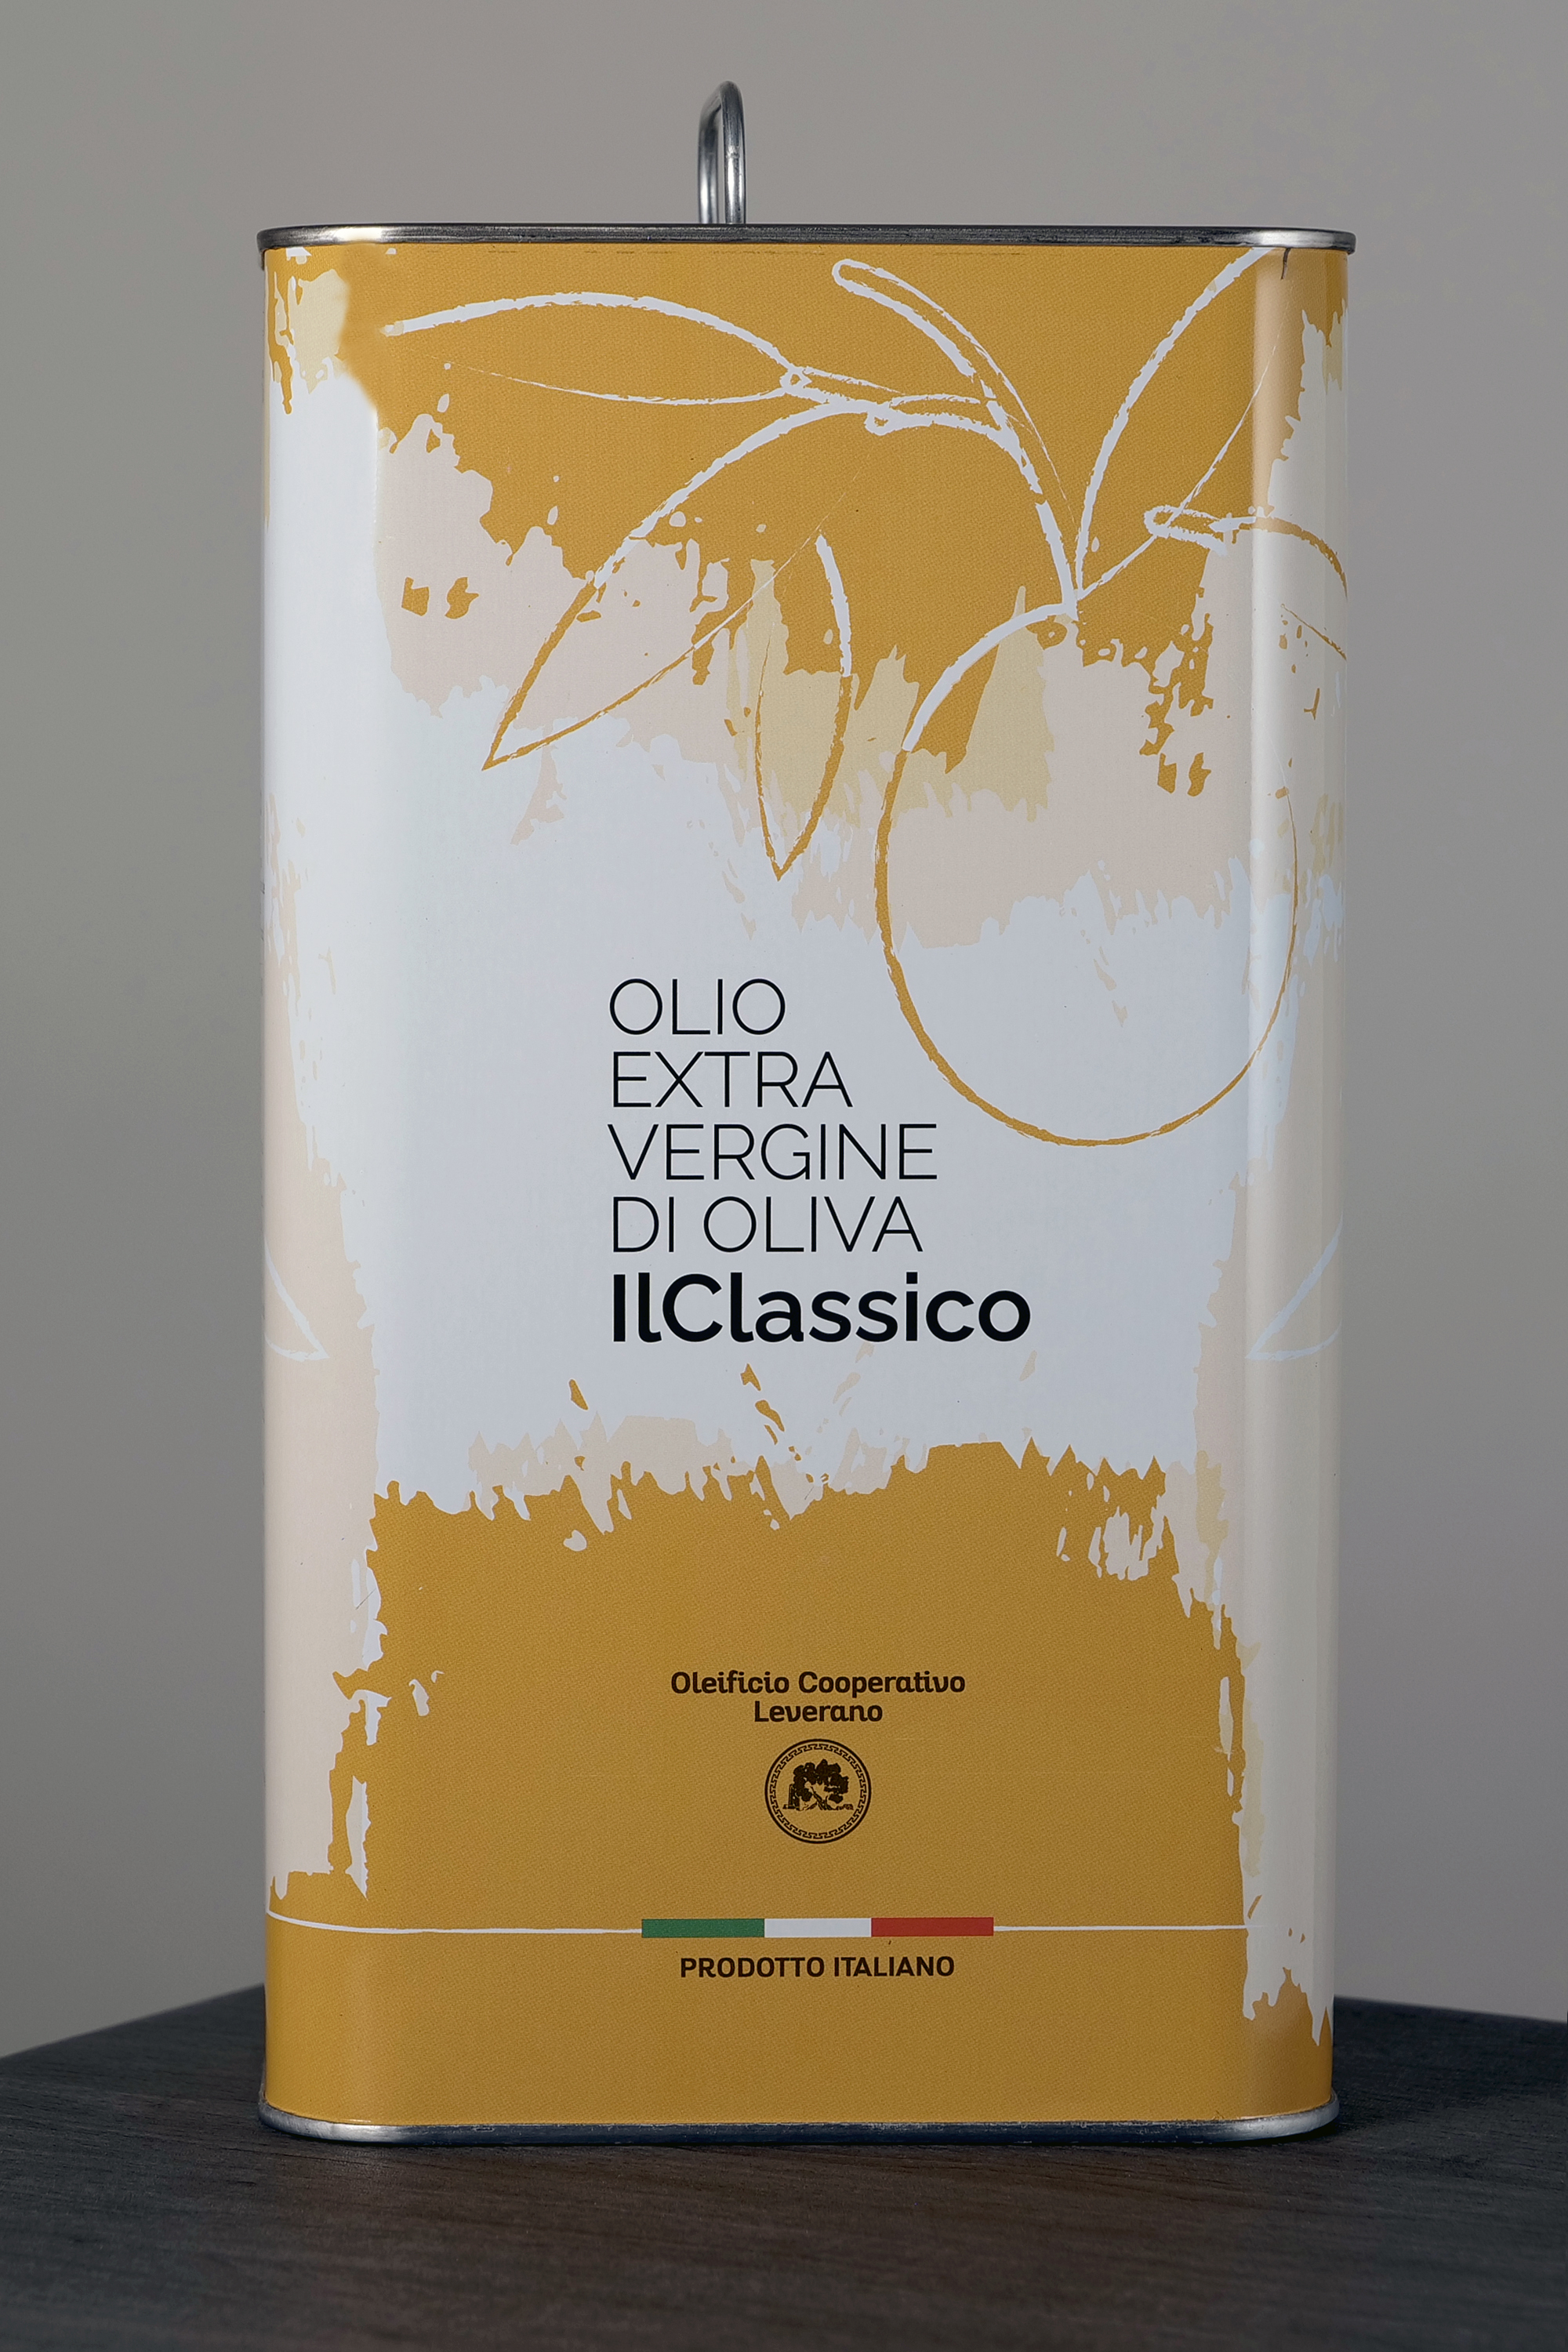 Extravergine d'oliva "IlClassico" - lt. 3,00